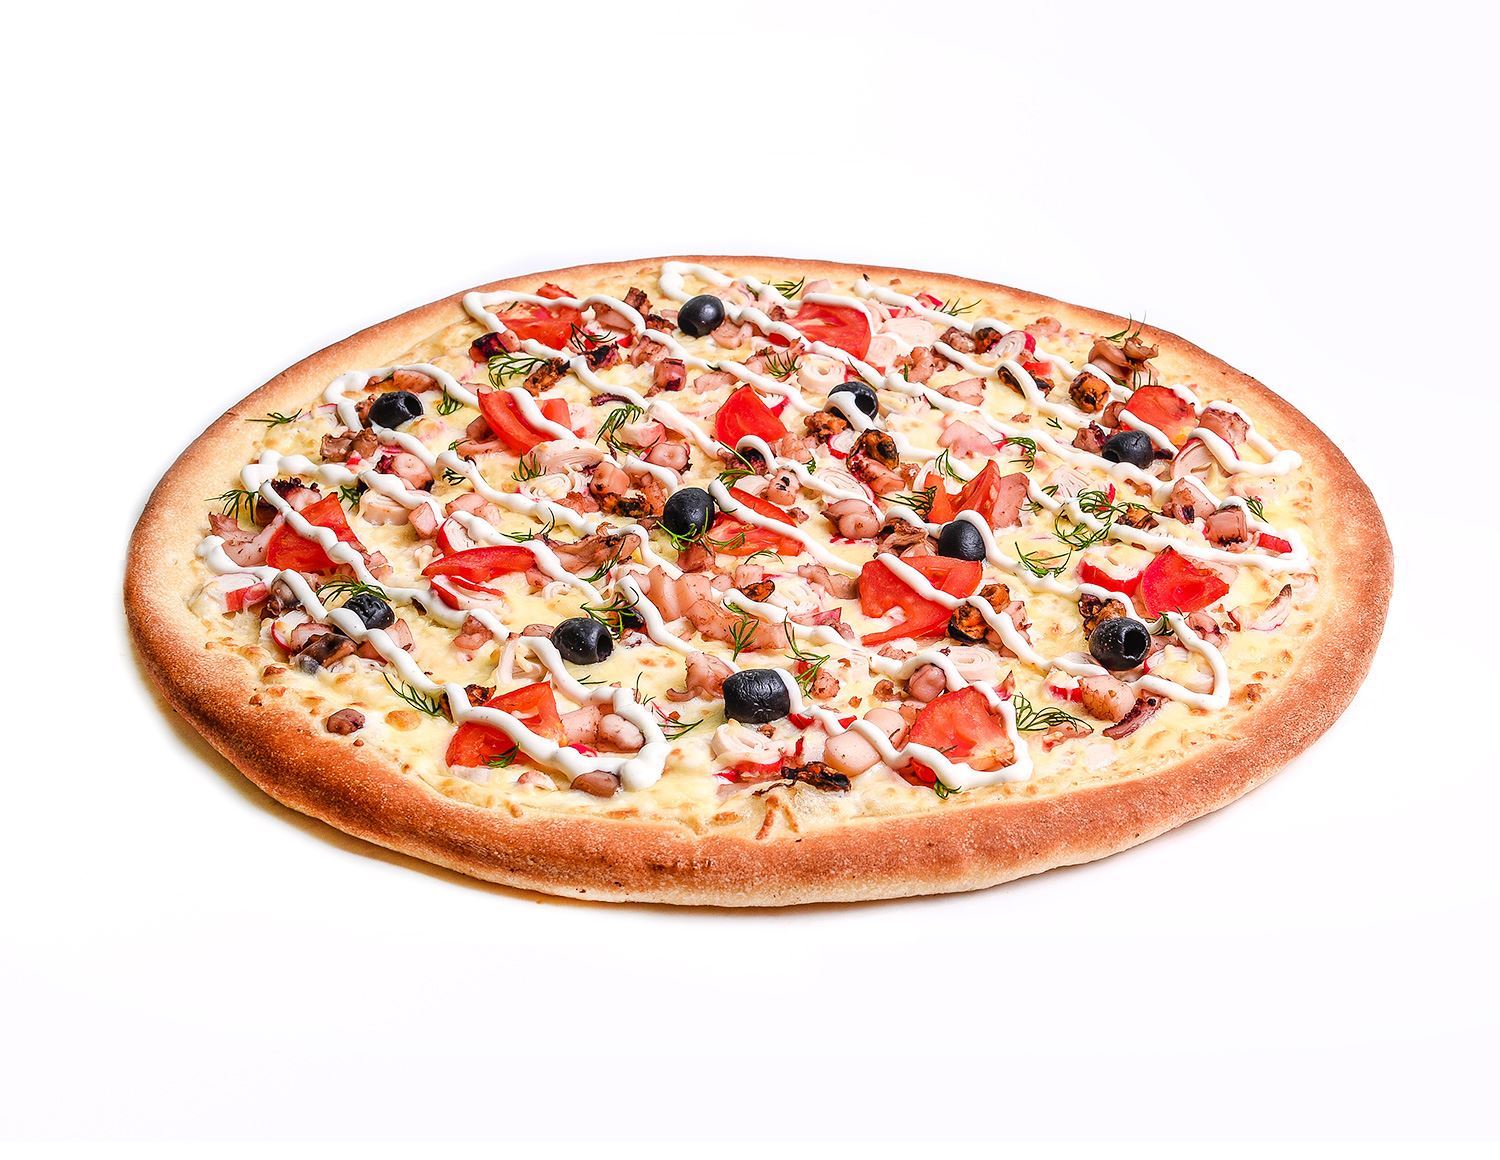 глаголевская пицца купино ассортимент и цены фото 66